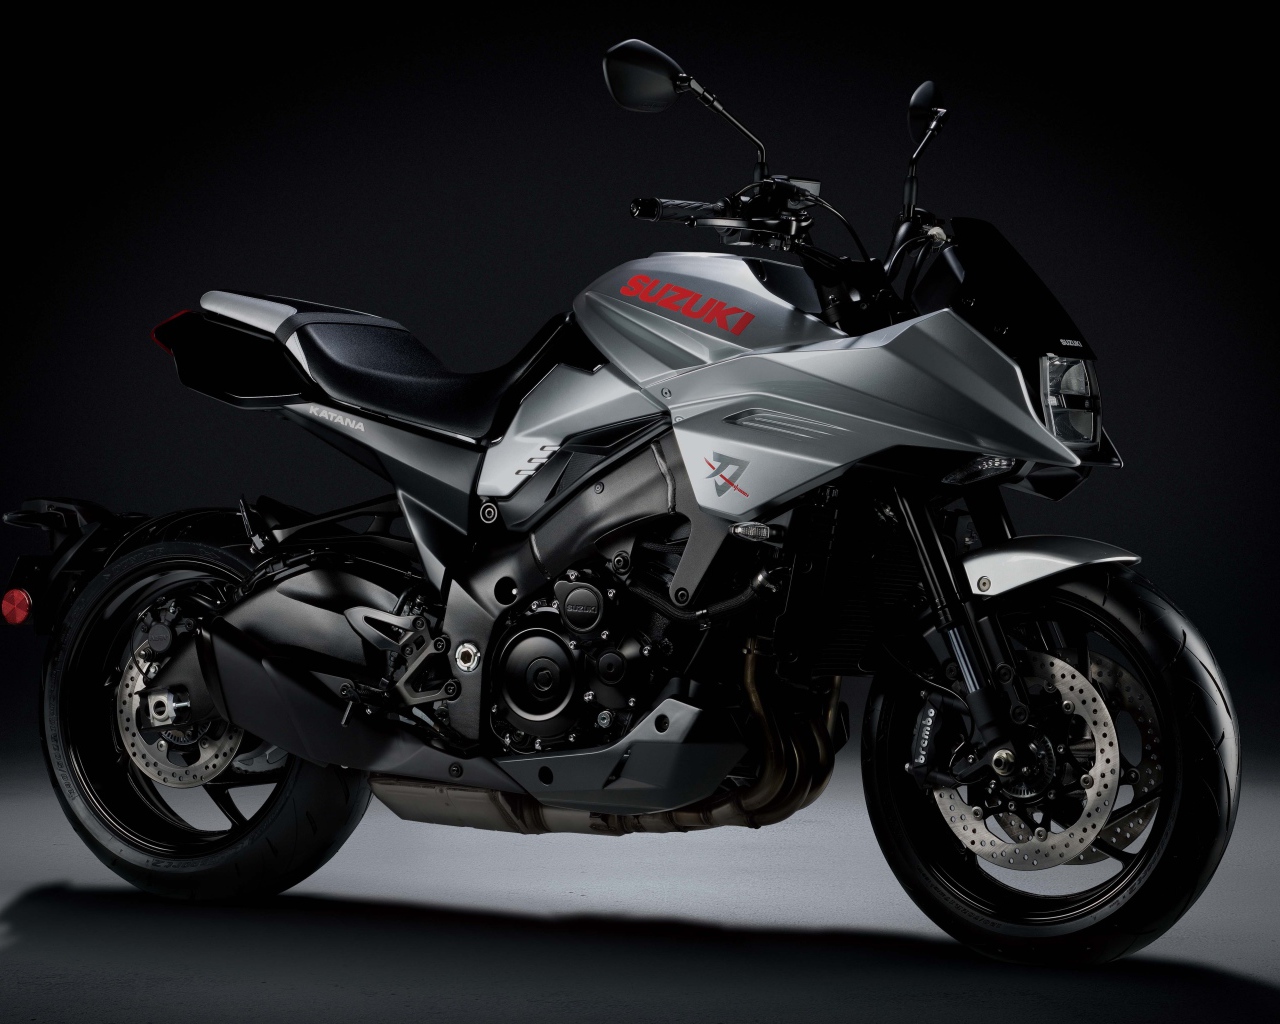 Стильный спортивный мотоцикл Suzuki Katana 2020